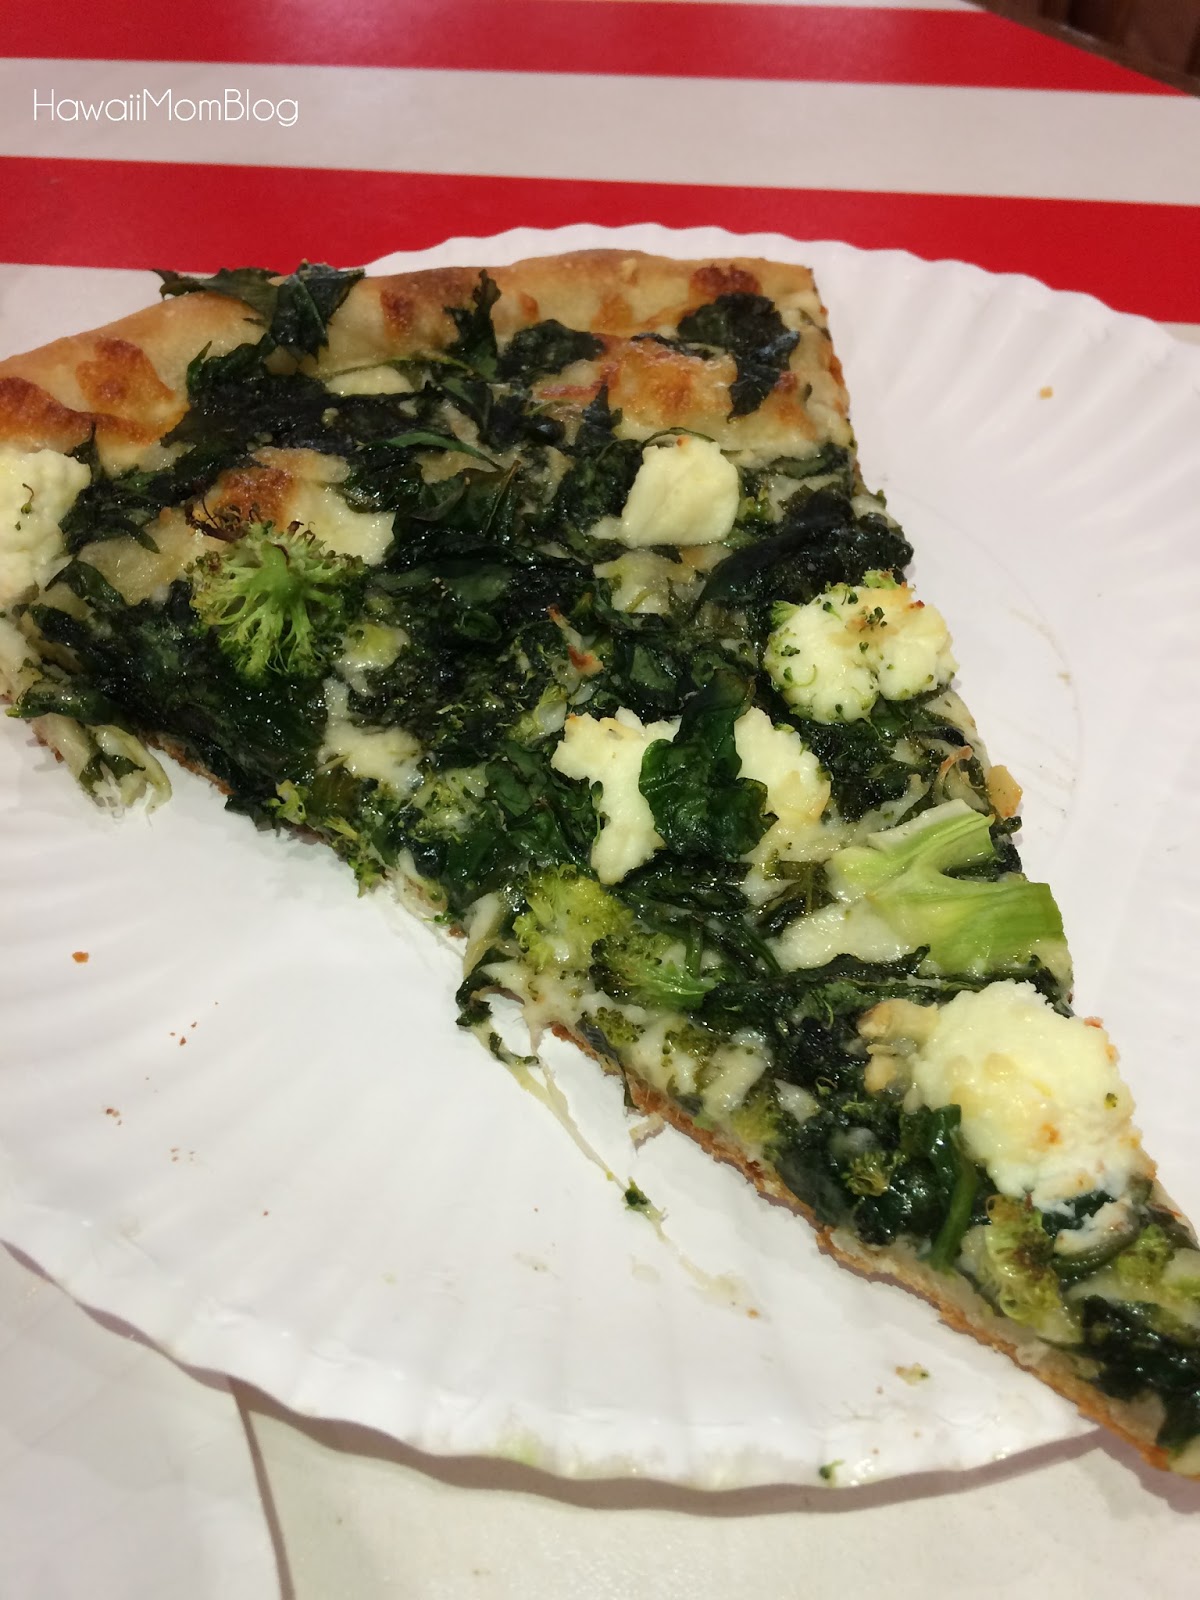 Hawaii Mom Blog: New in Wahiawa - NY Deli Featuring Boston's Pizza